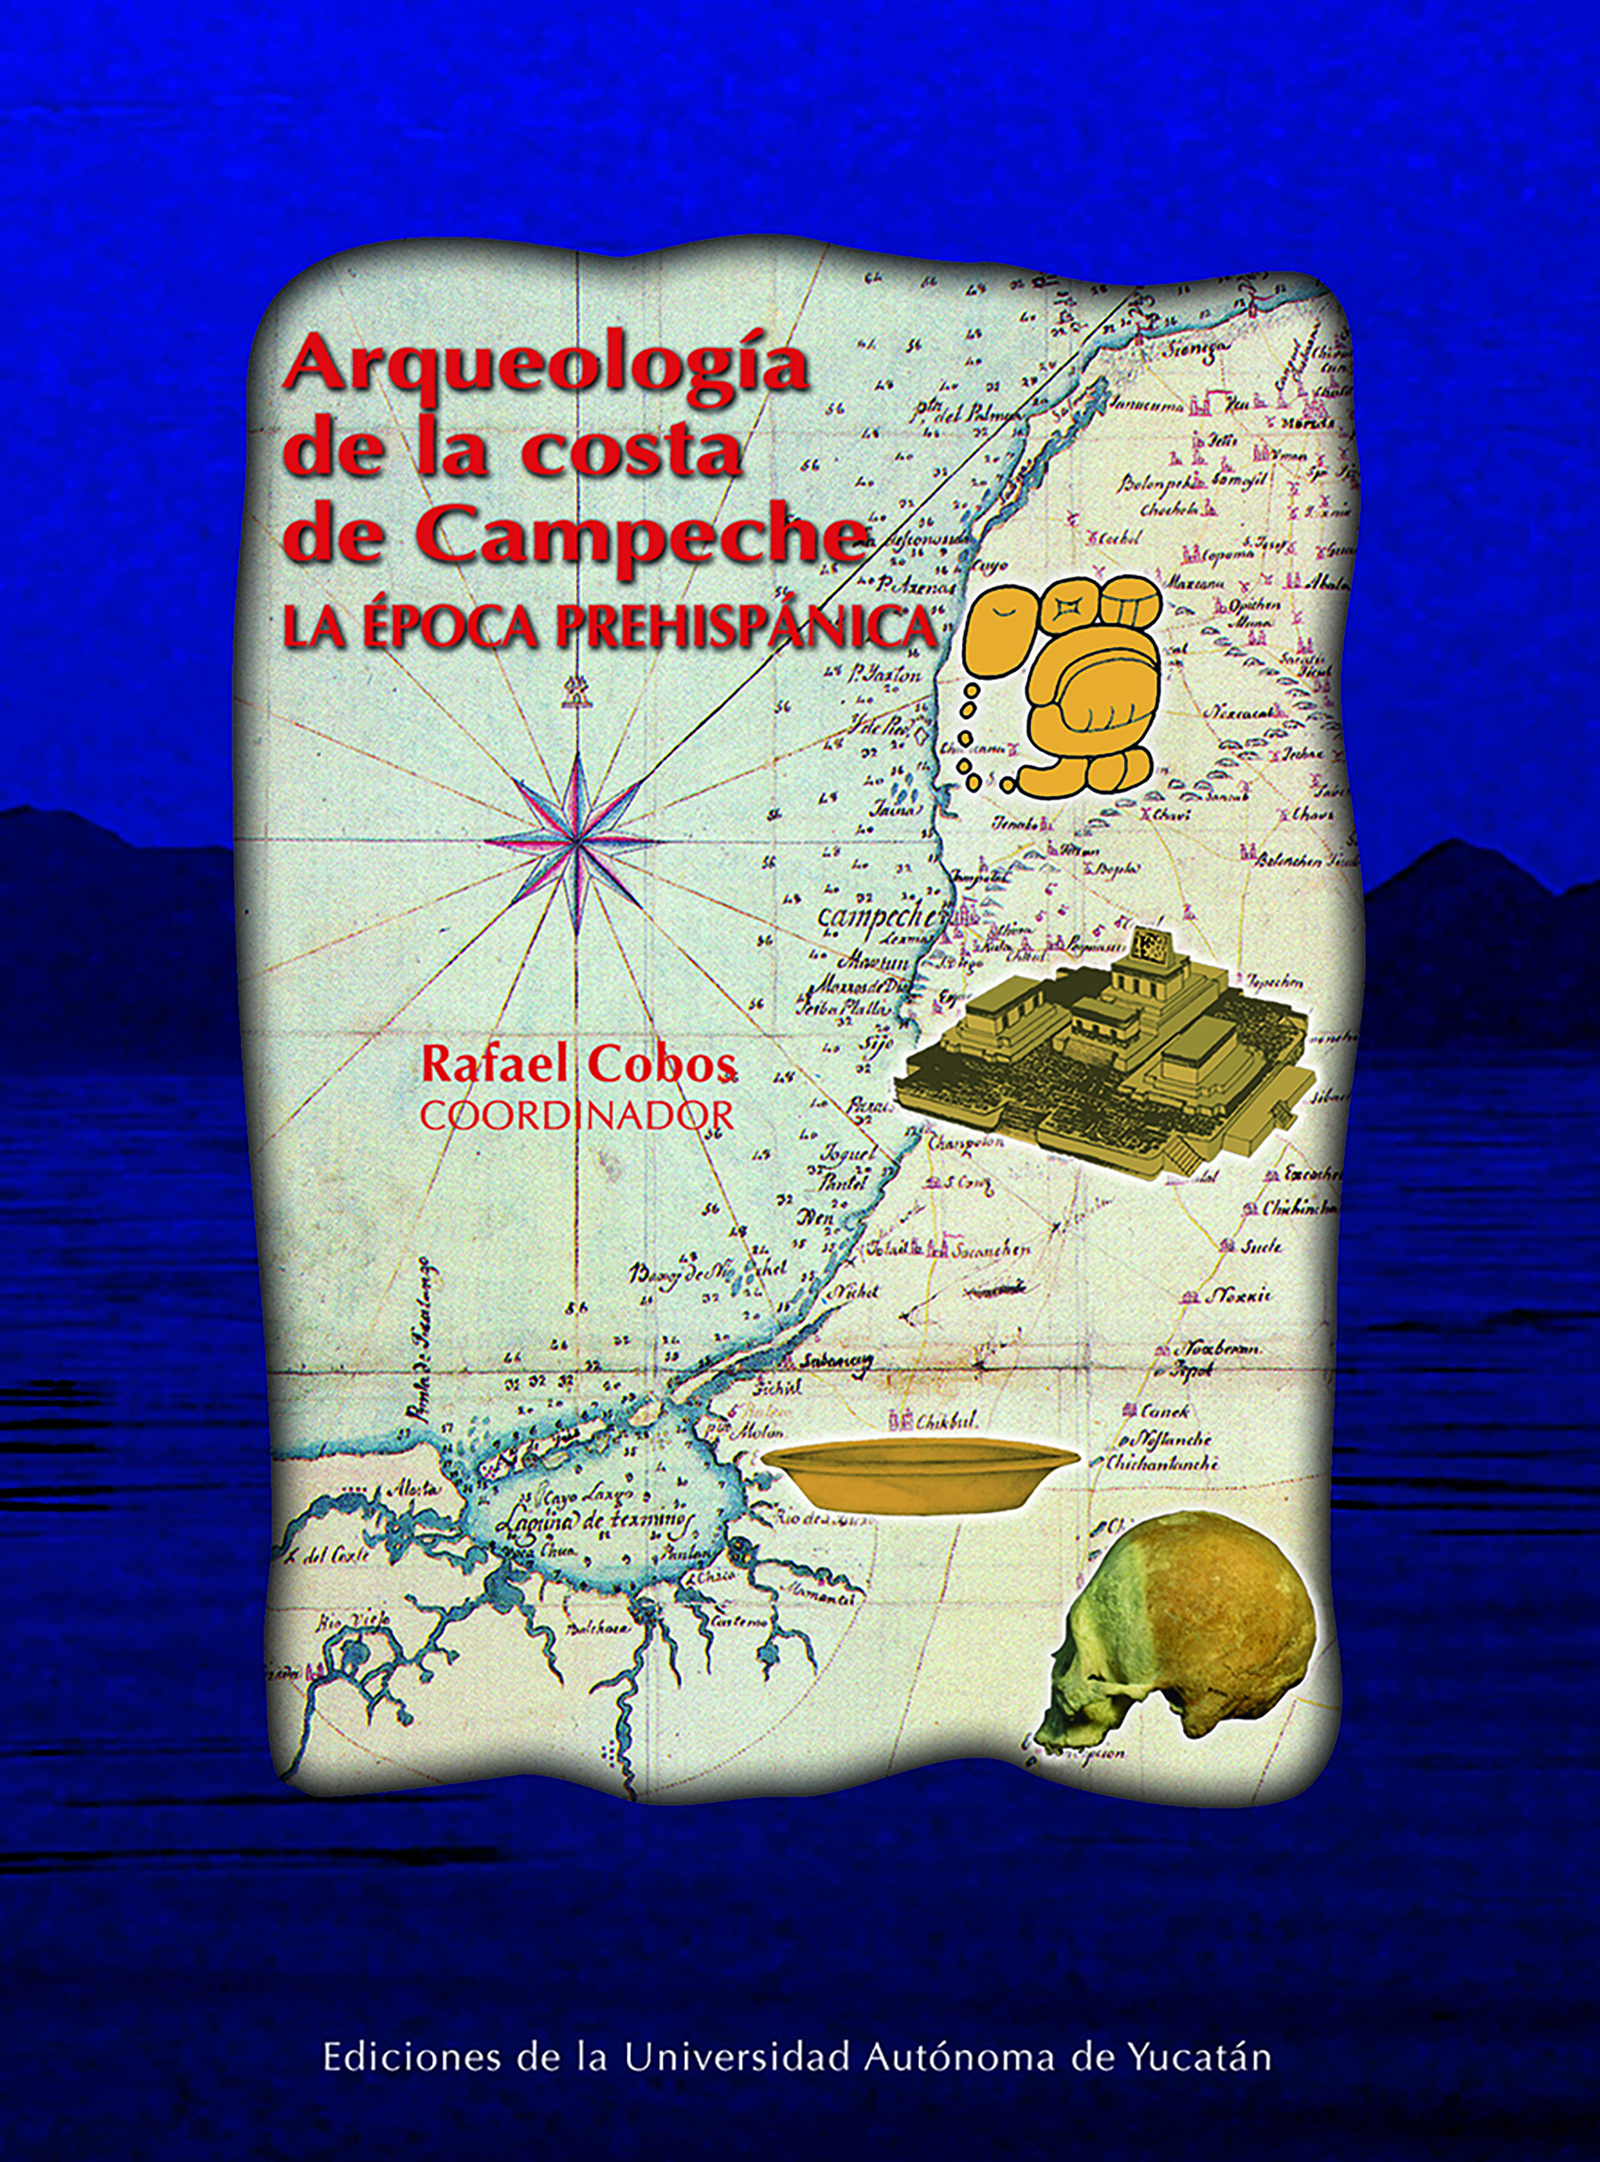 Arqueología de la costa de Campeche: la época  prehispánica